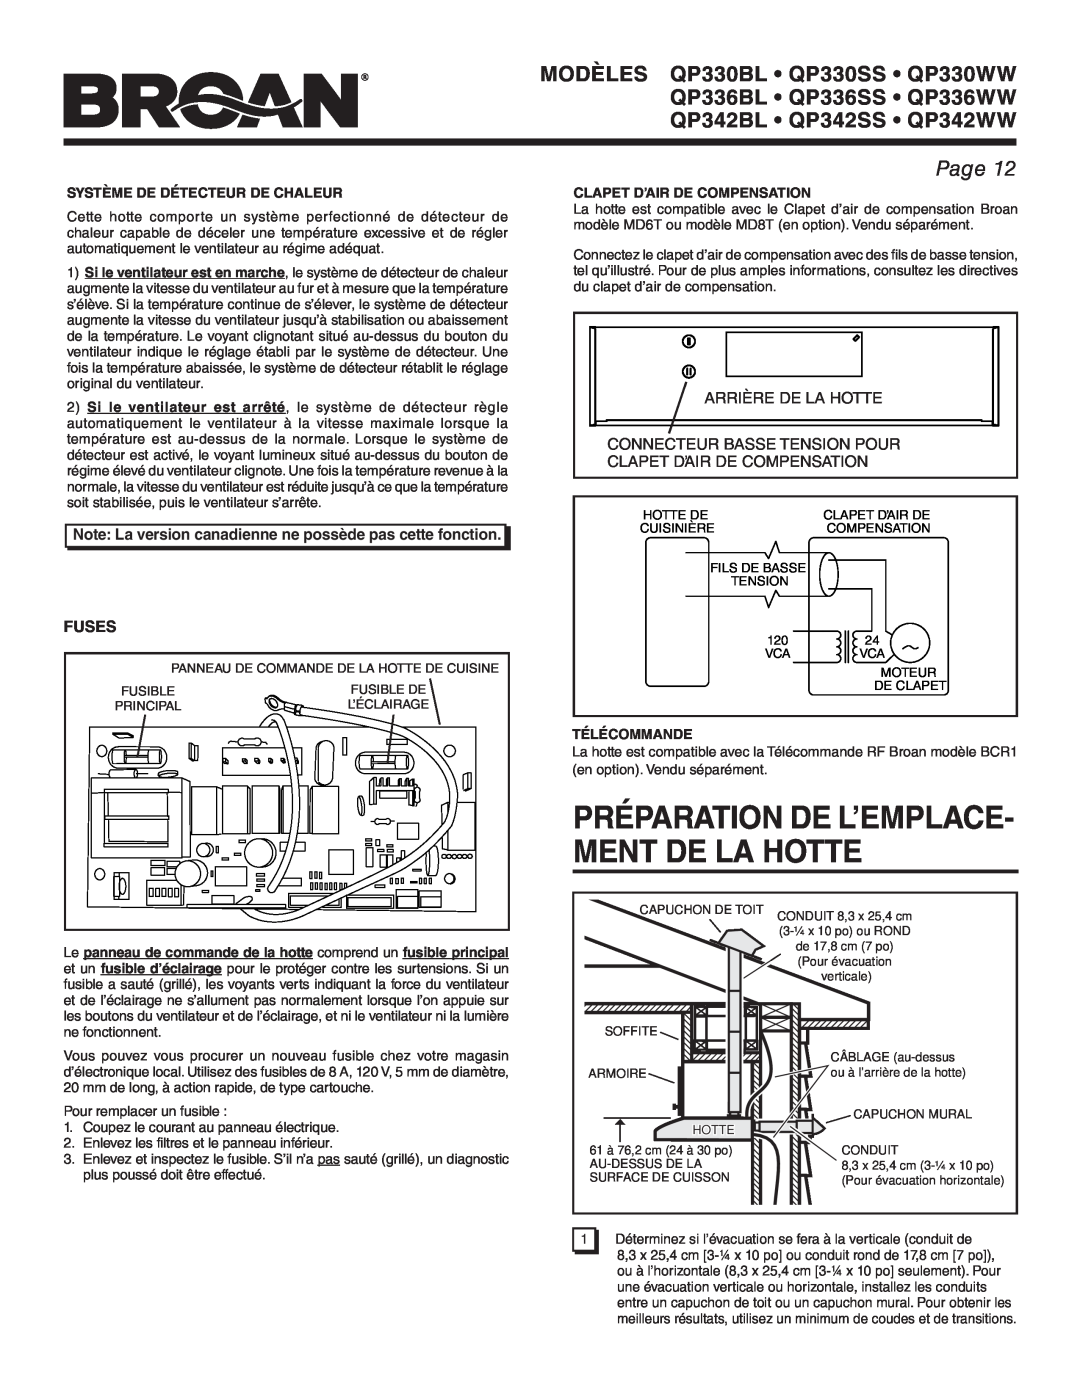 Broan QP336BL Préparation De L’Emplace- Ment De La Hotte, Page, Fuses, Système De Détecteur De Chaleur, Télécommande 